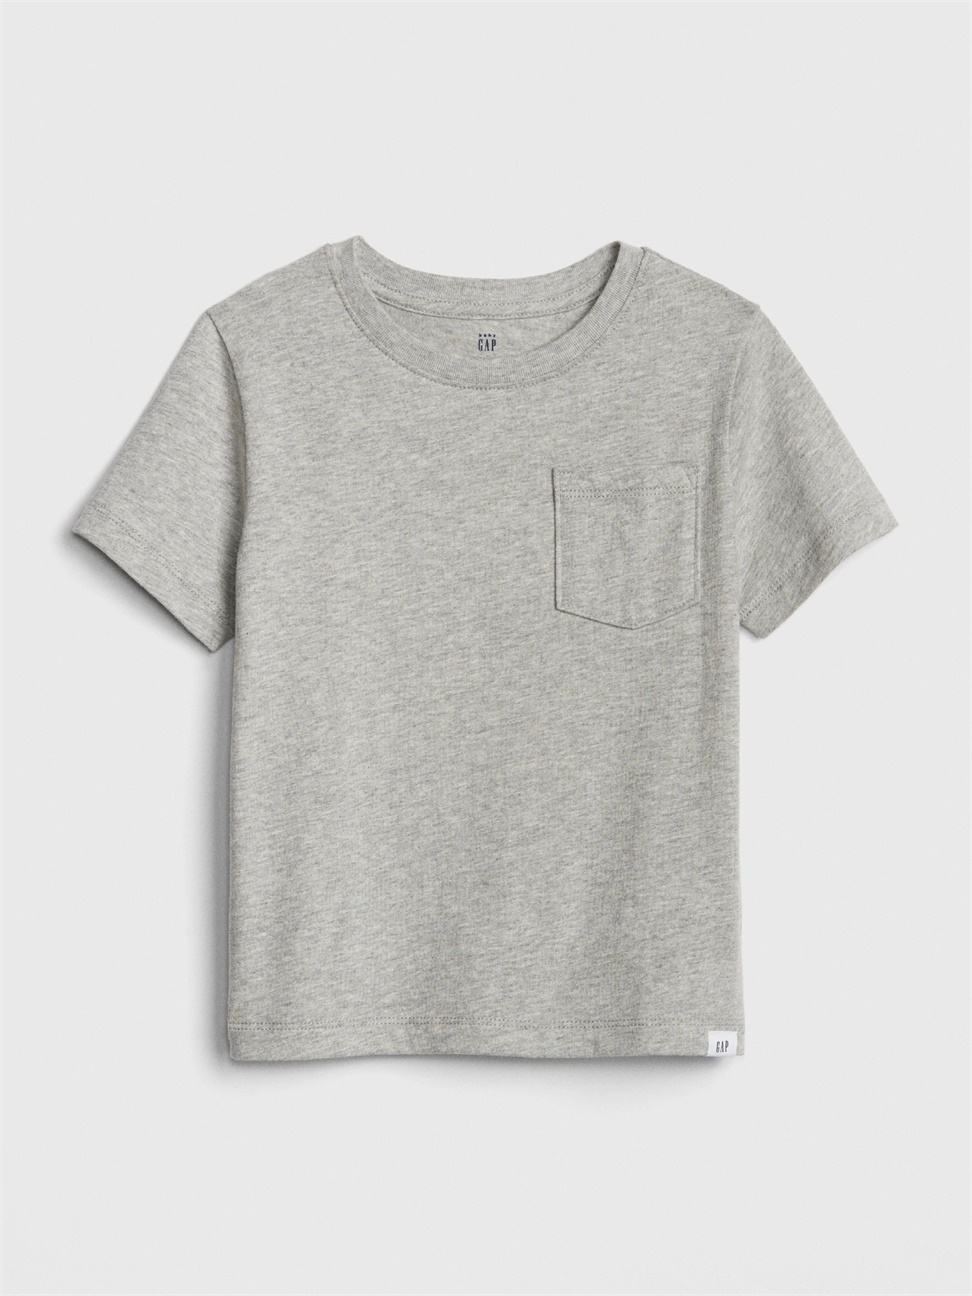 男幼童裝|棉質舒適圓領短袖T恤-亮麻灰色